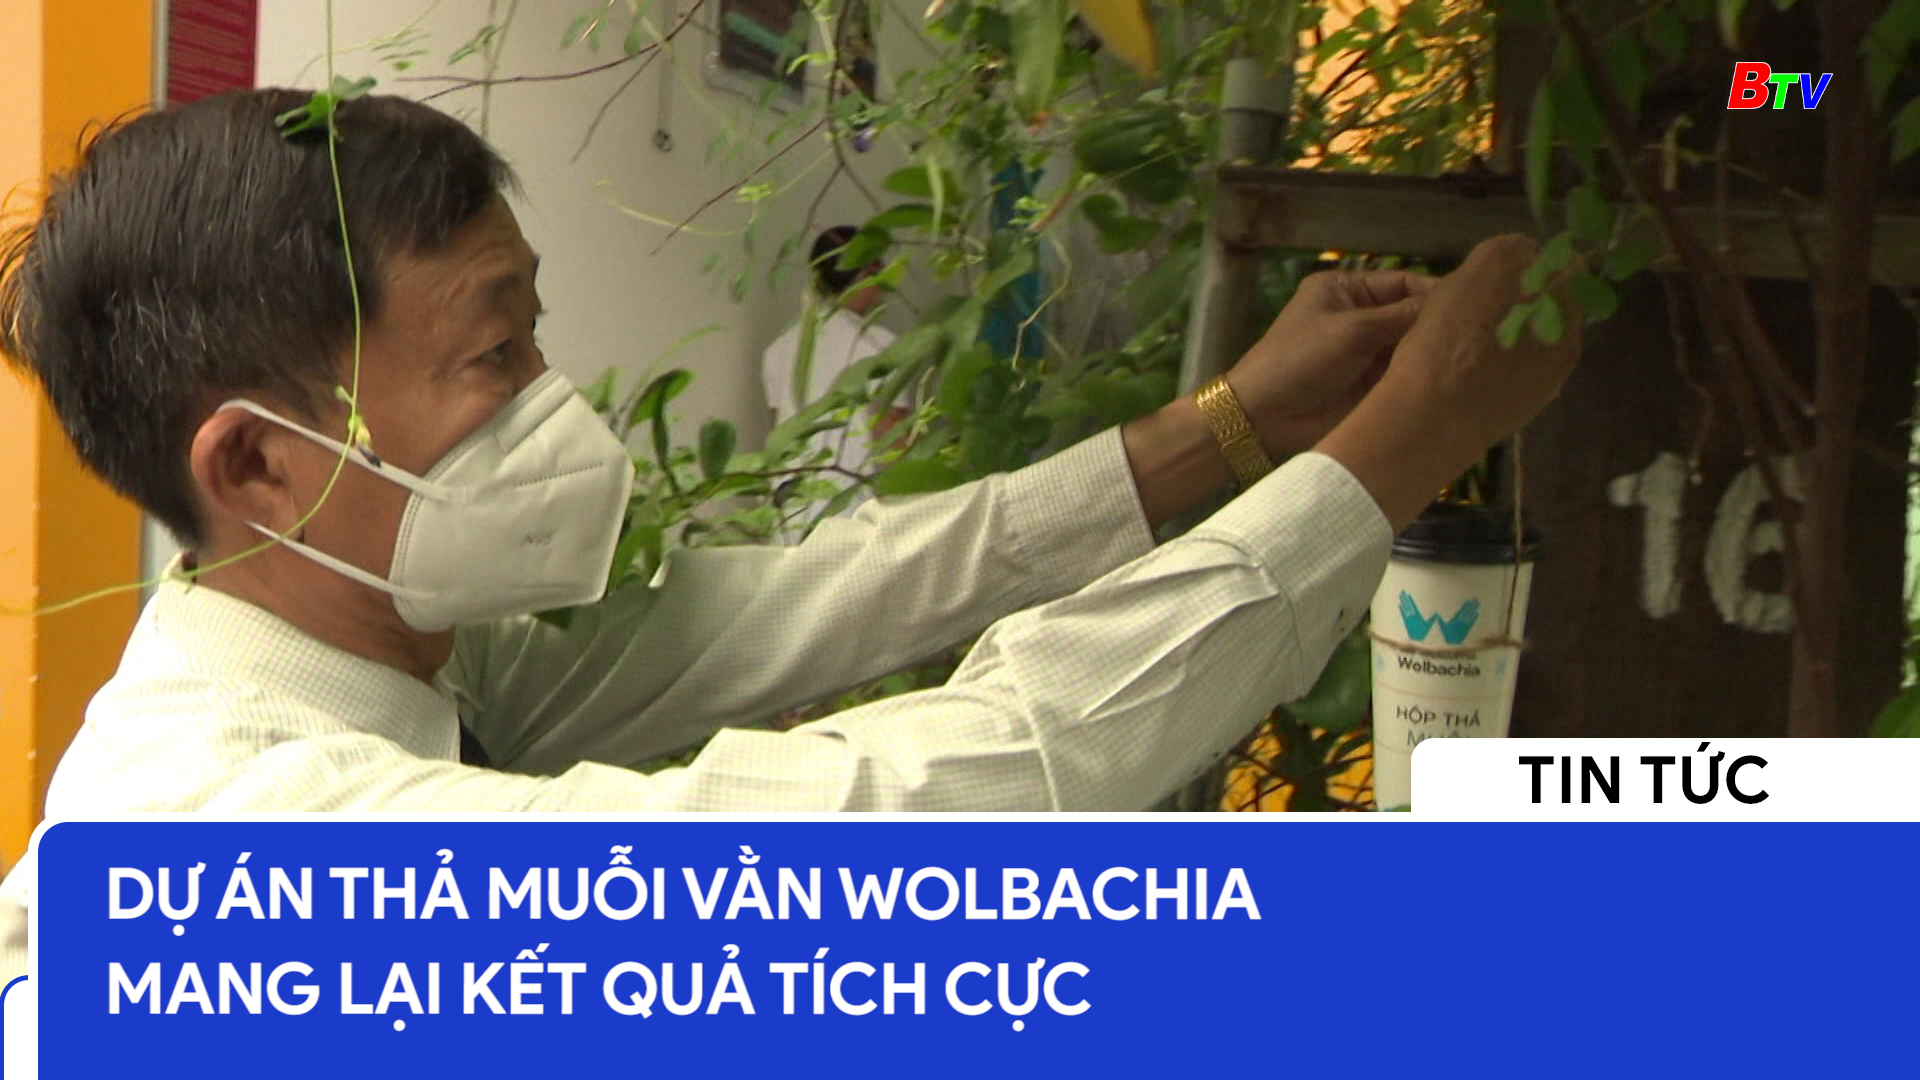 Dự án thả muỗi vằn WOLBACHIA mang lại kết quả tích cực